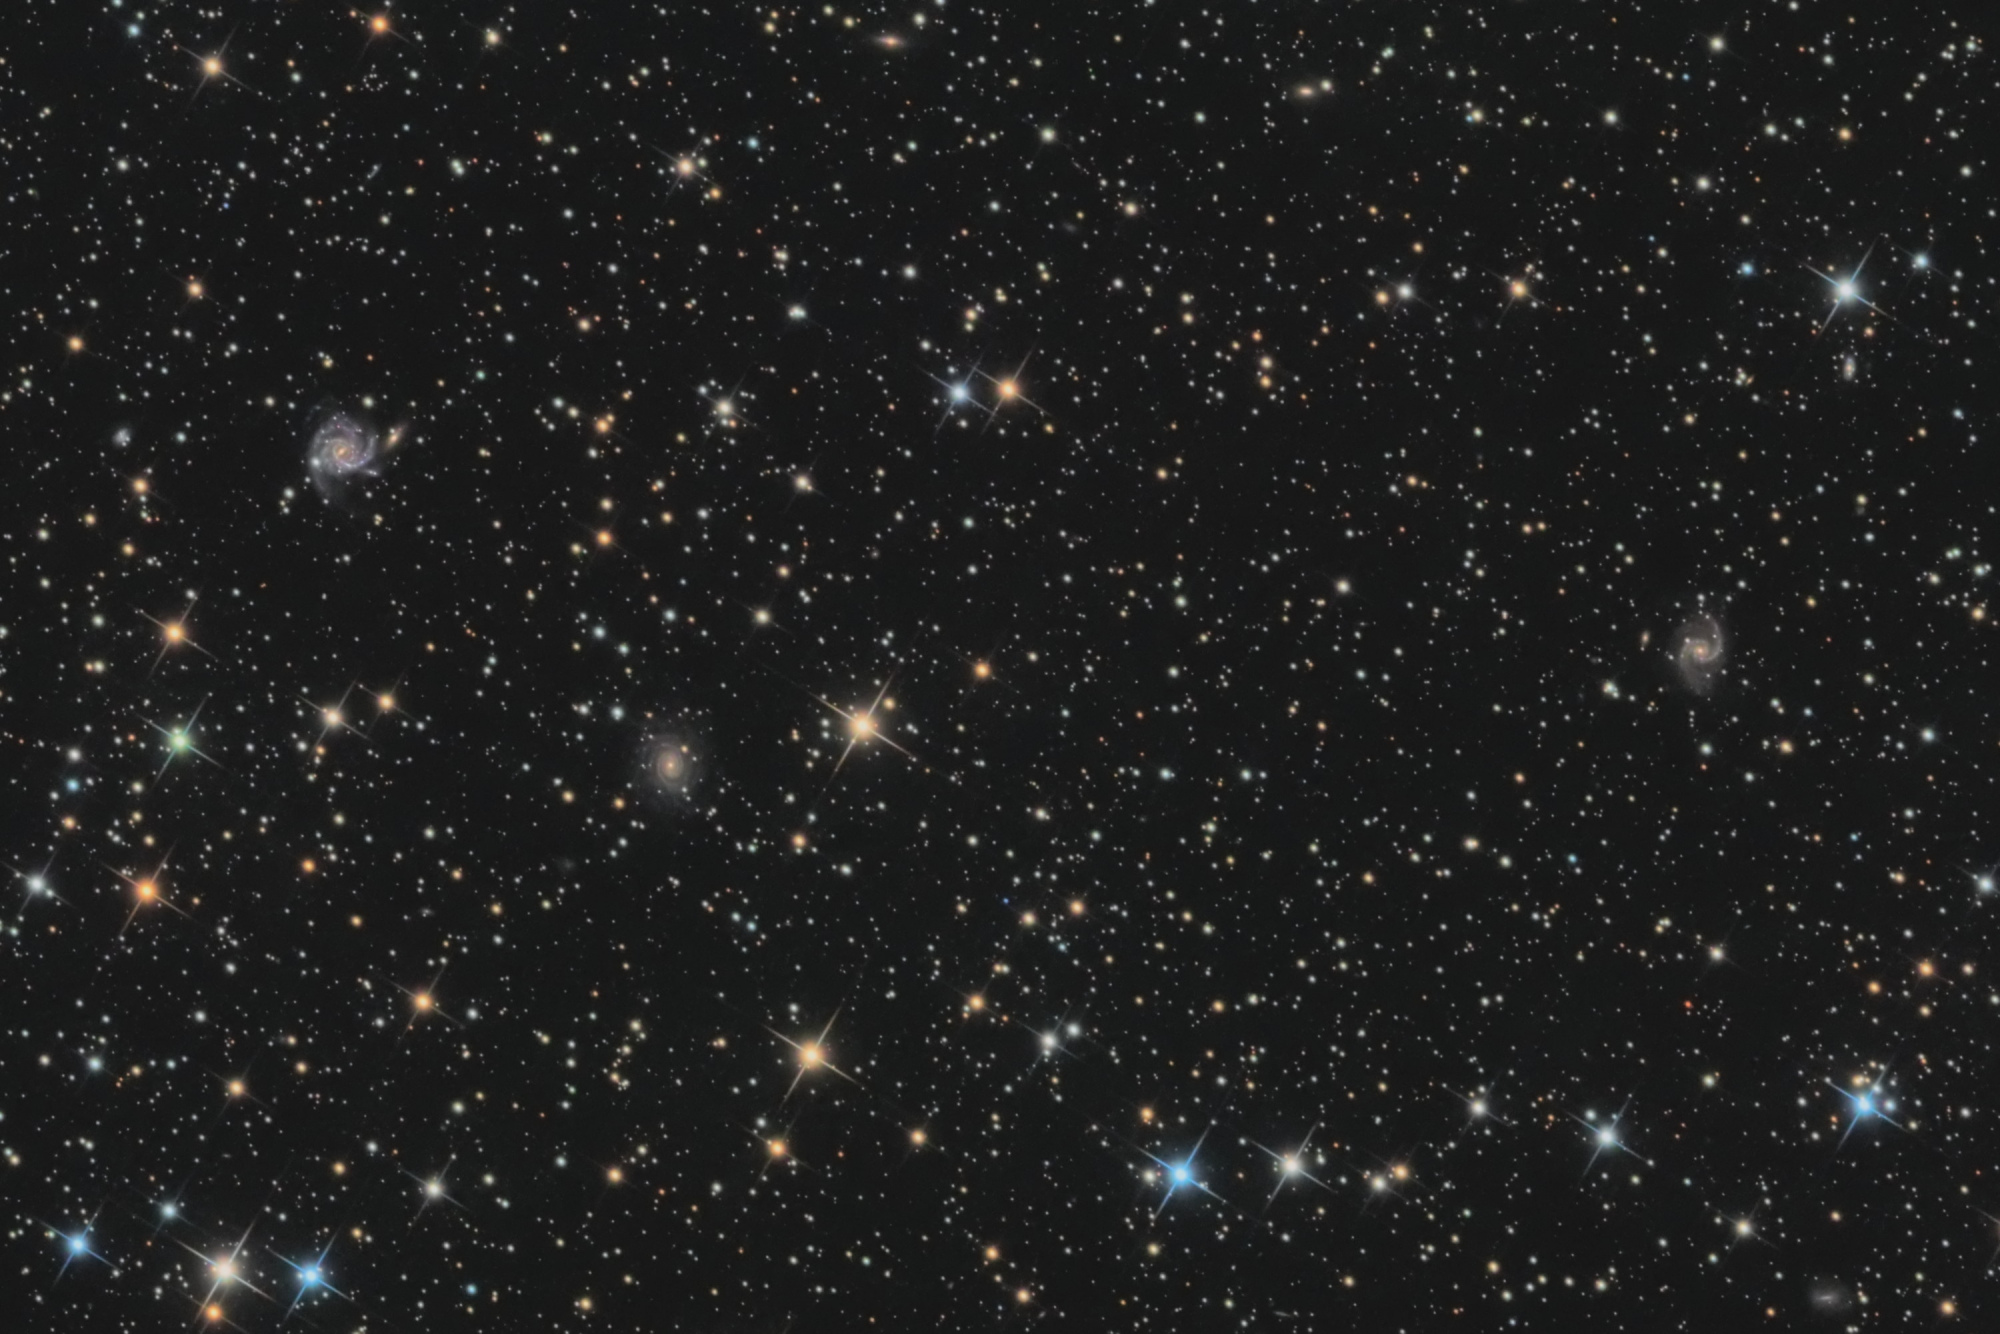 galaxies_lacerta_crop.thumb.jpg.cc32760e0e127e3df1a8666823e86f7c.jpg